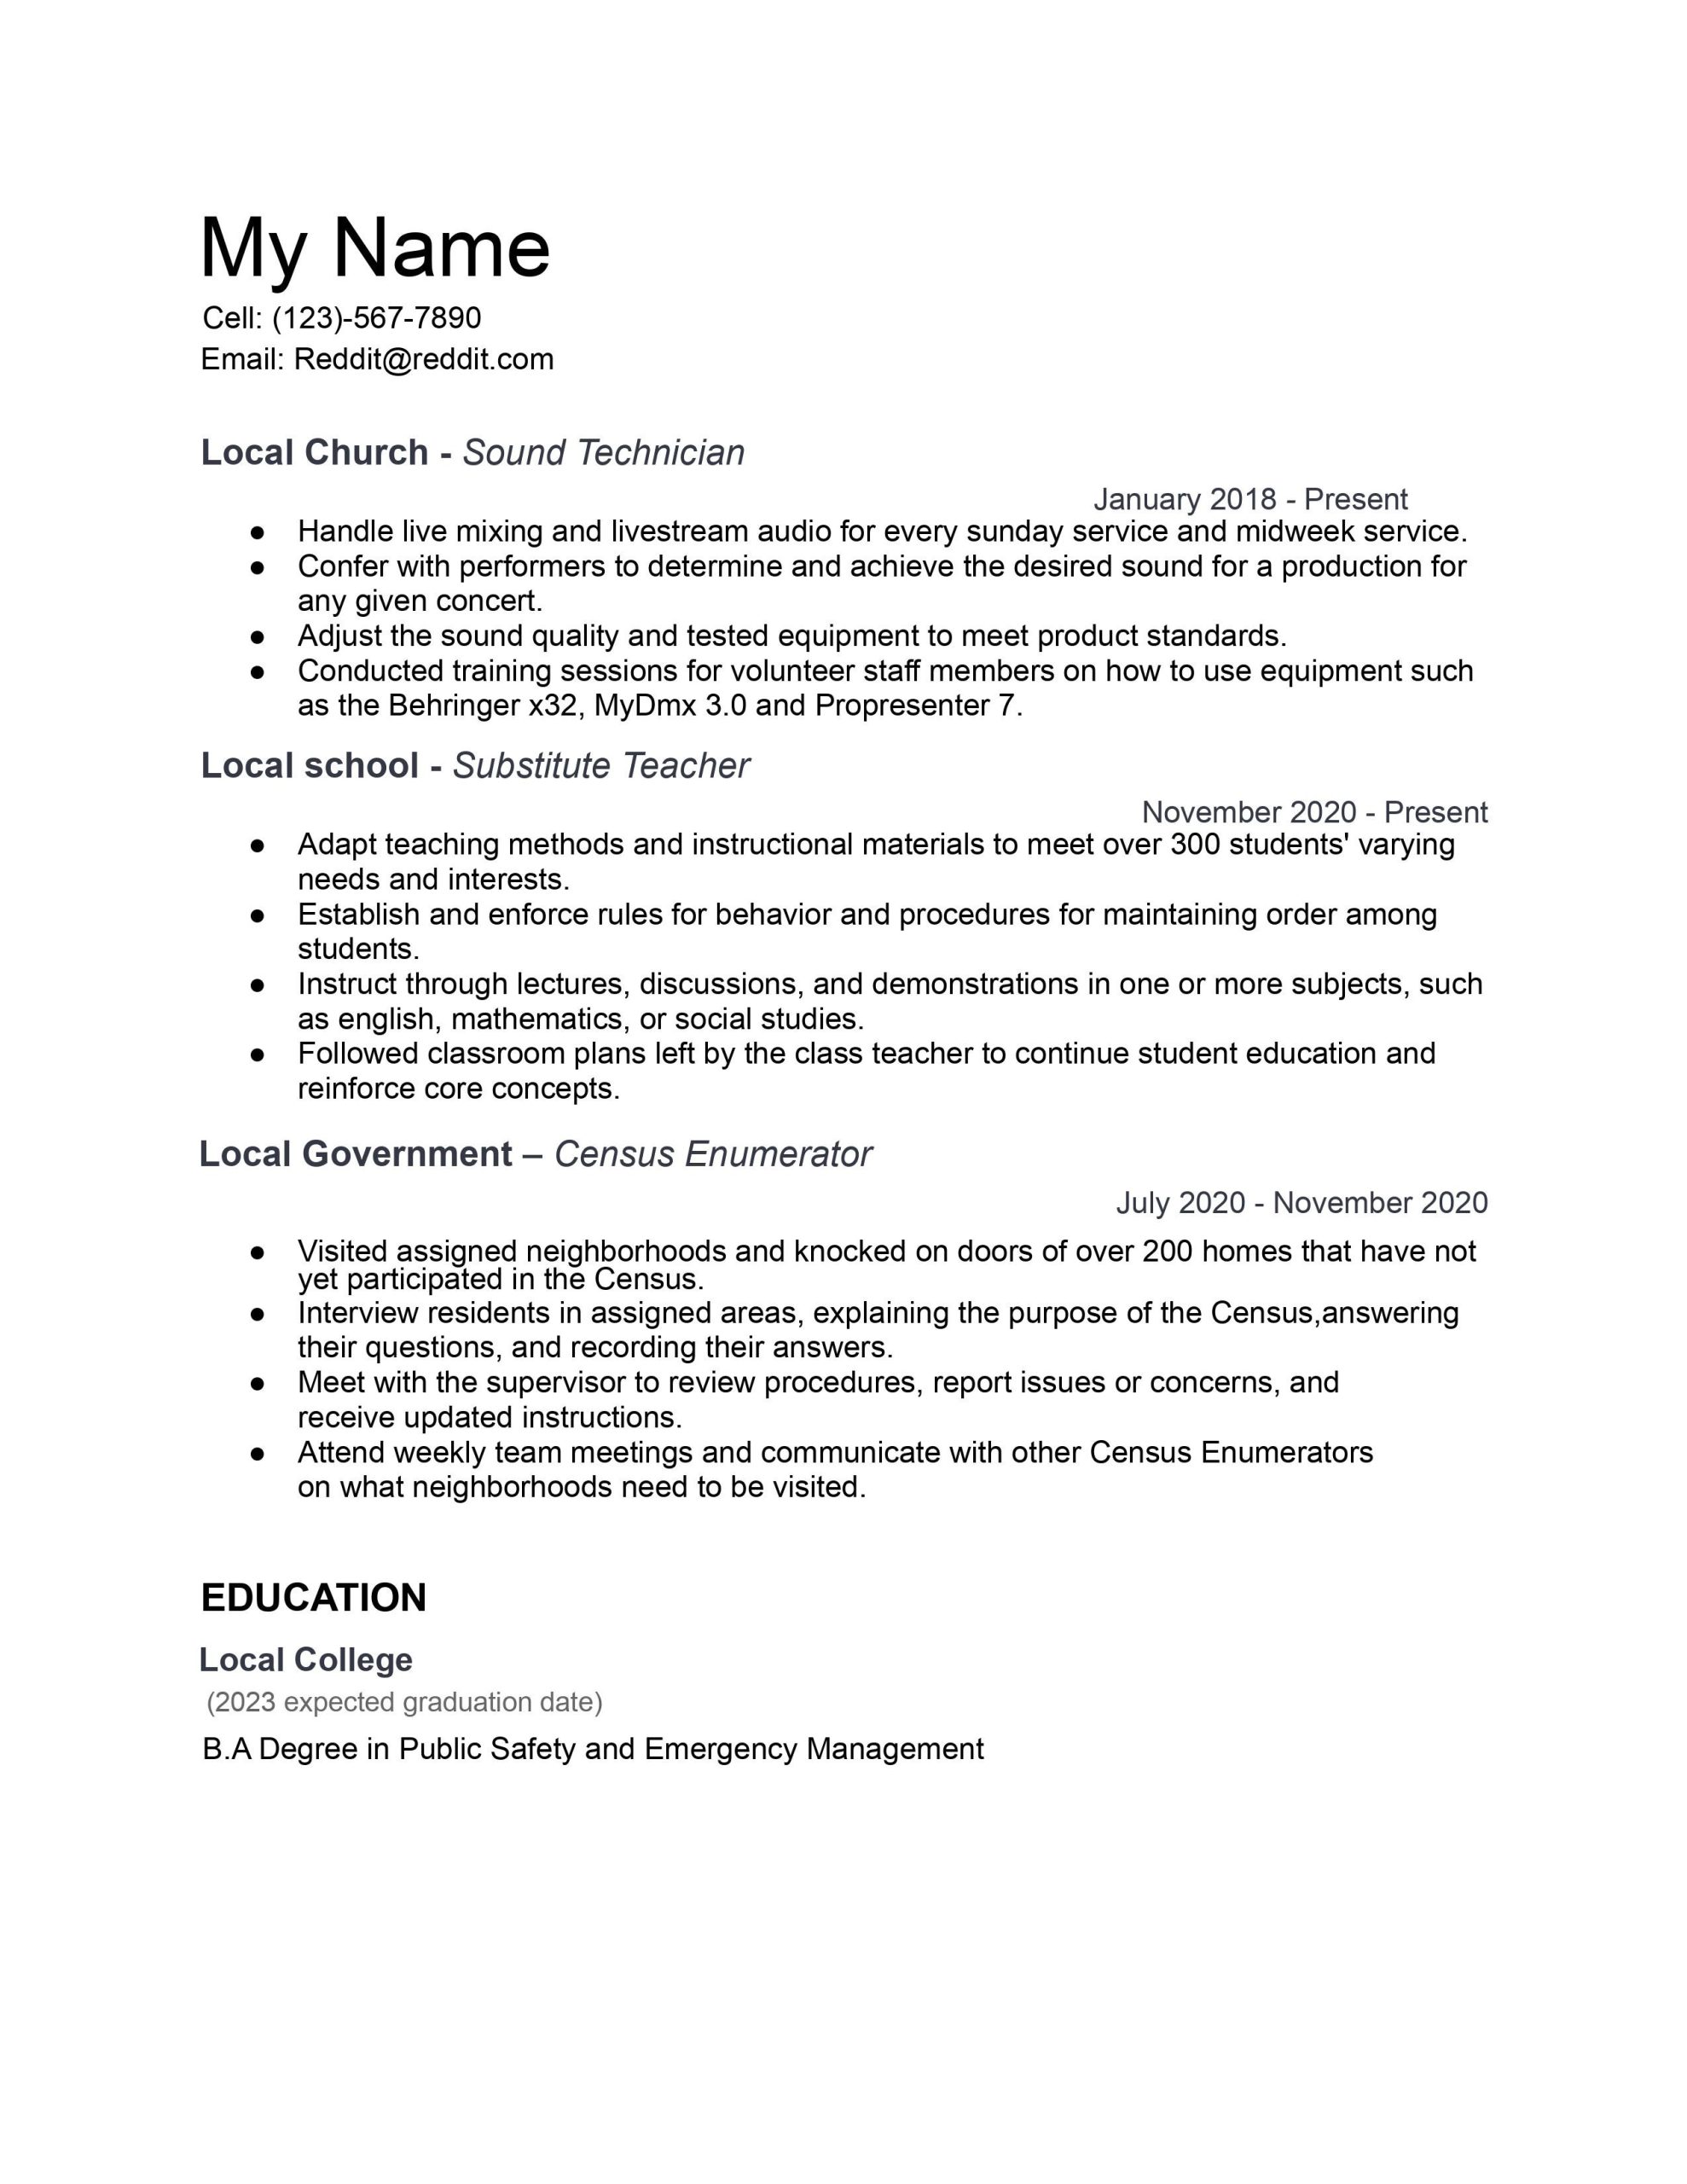 Resume for Substitute Teacher Samples 2023 I’m Looking for Career Change From Substitute Teacher to Stagehand …